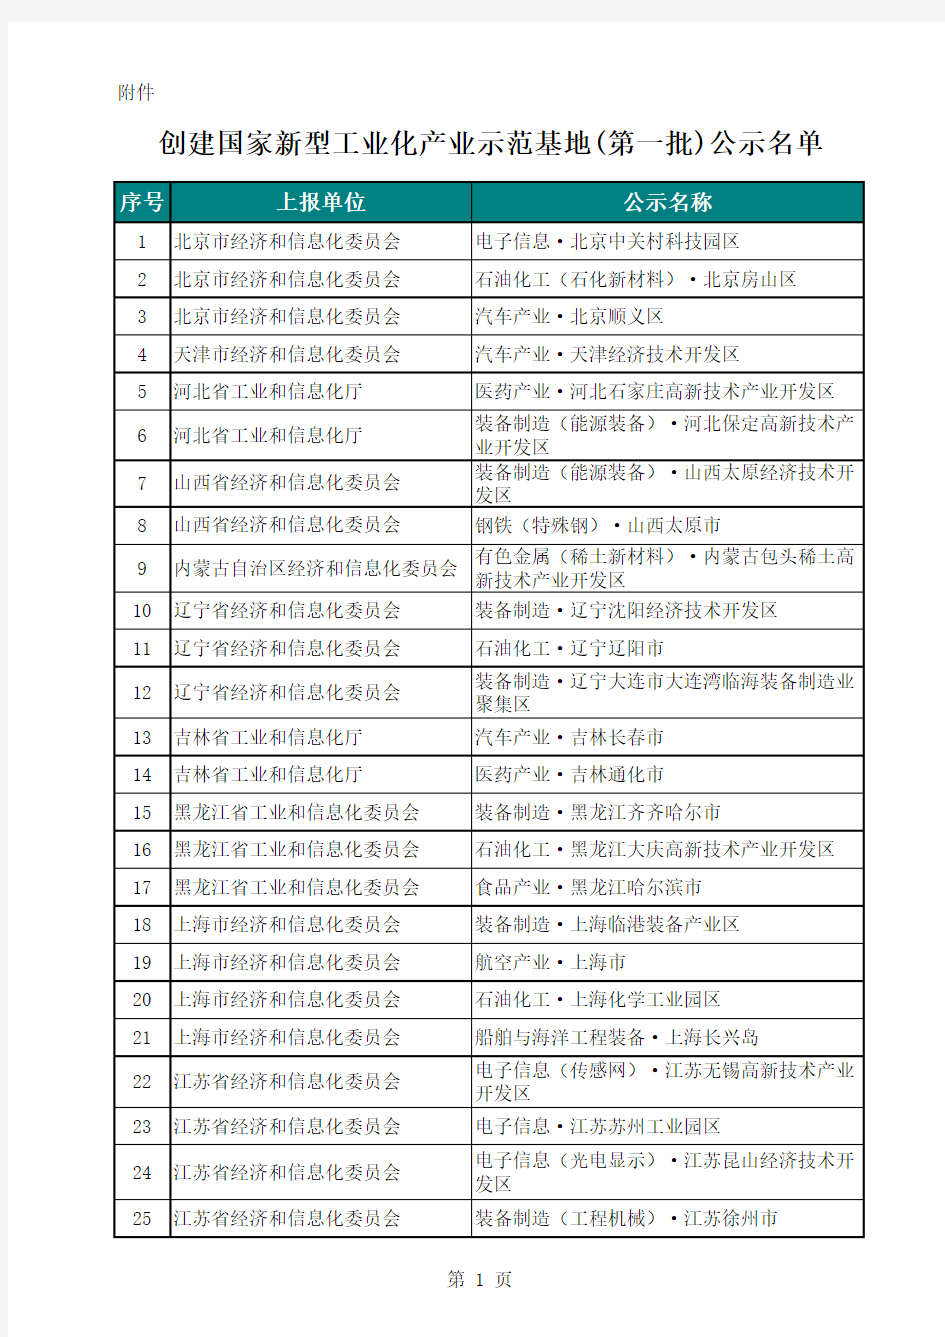 国家新型工业化产业示范基地(第一批)公示名单-20091217